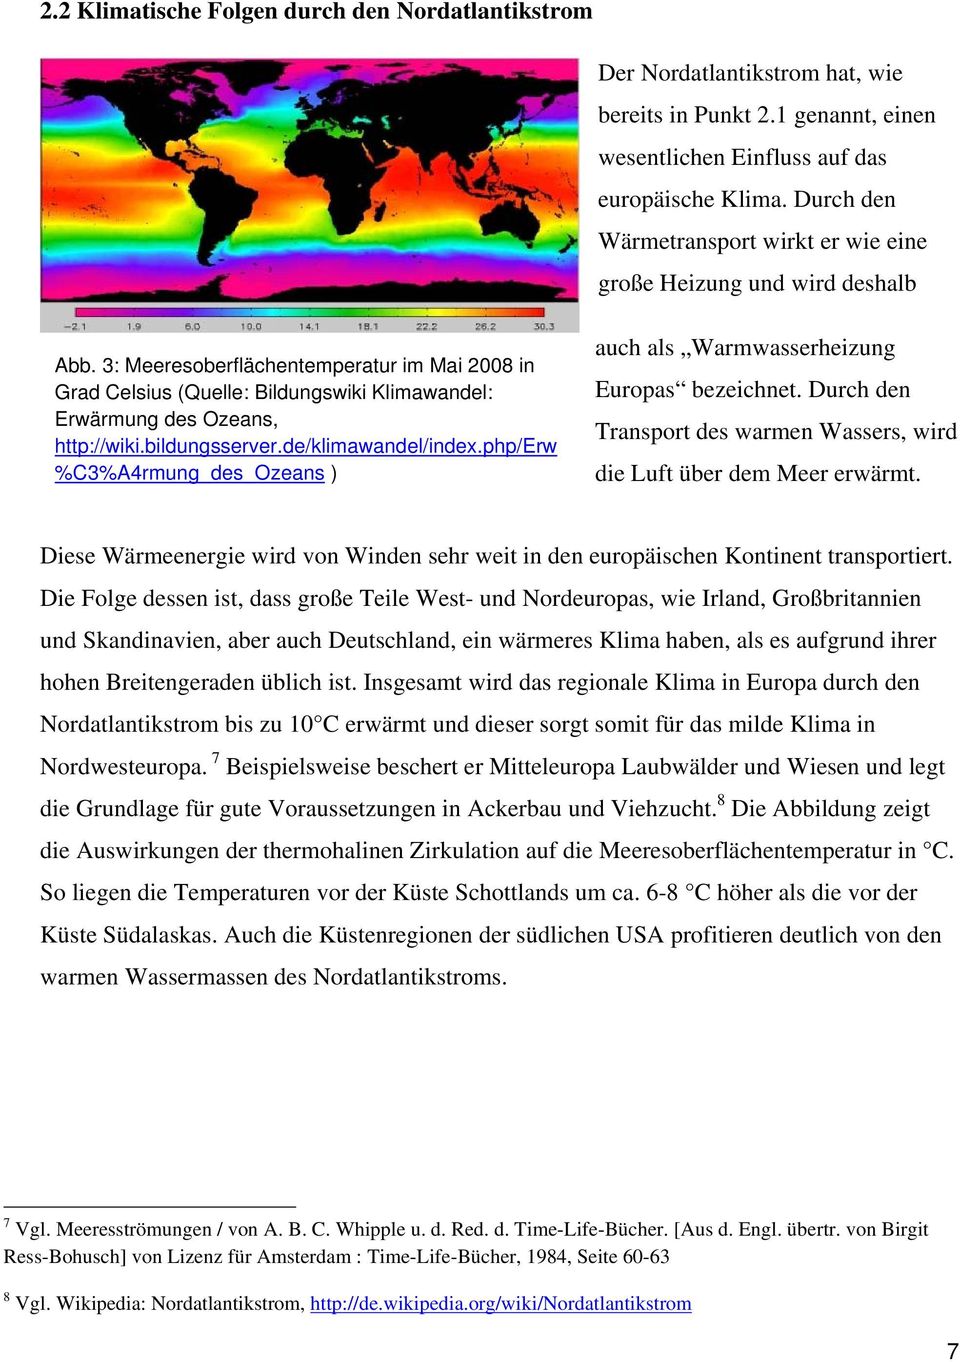 3: Meeresoberflächentemperatur im Mai 2008 in Grad Celsius (Quelle: Bildungswiki Klimawandel: Erwärmung des Ozeans, http://wiki.bildungsserver.de/klimawandel/index.